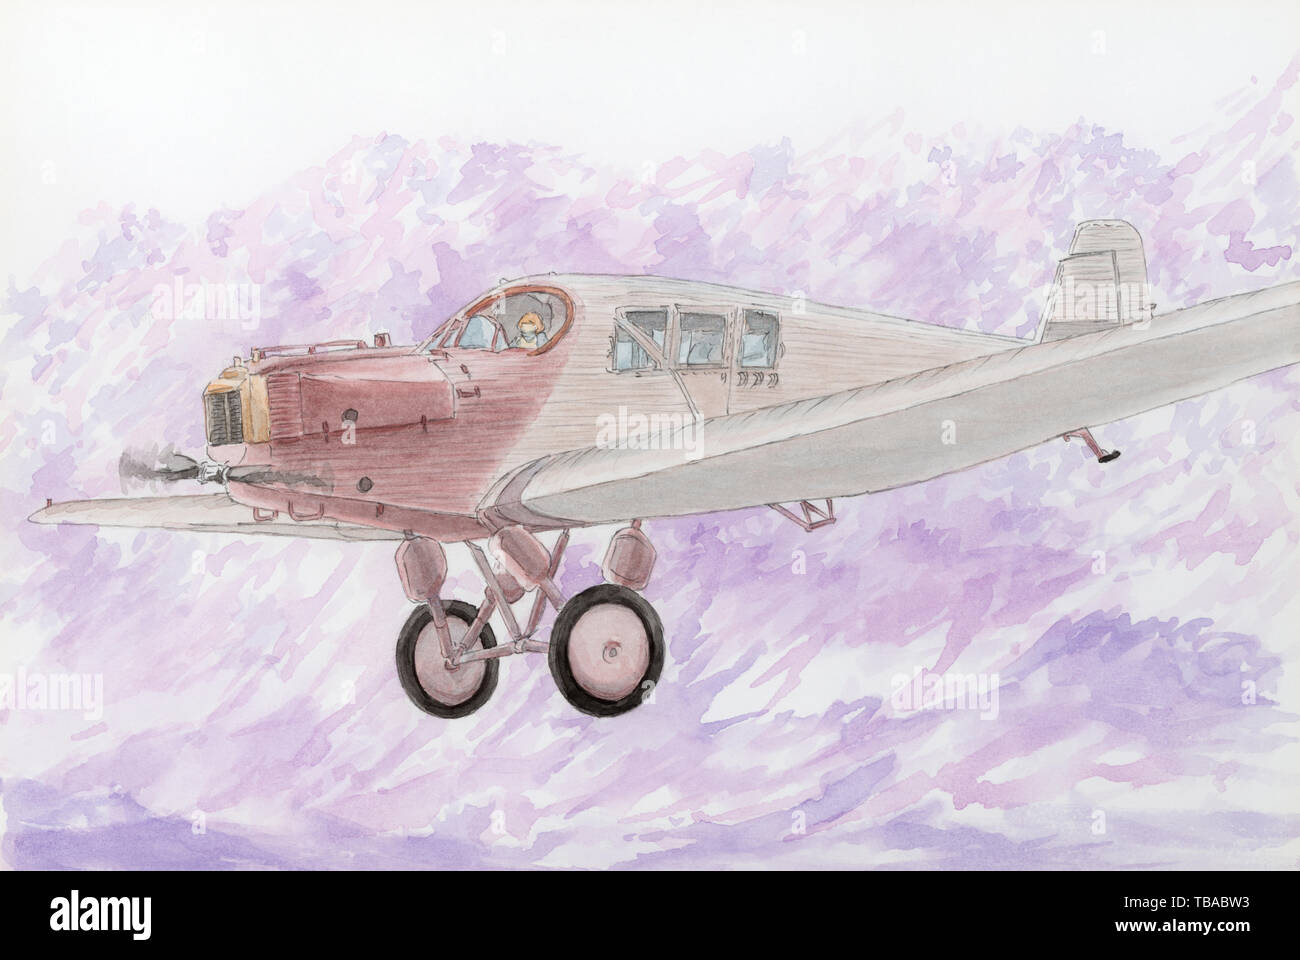 Disegno di un primo metallo aeromobili passeggeri Junkers F-13 in volo. Matita e acquarello su carta. Foto Stock